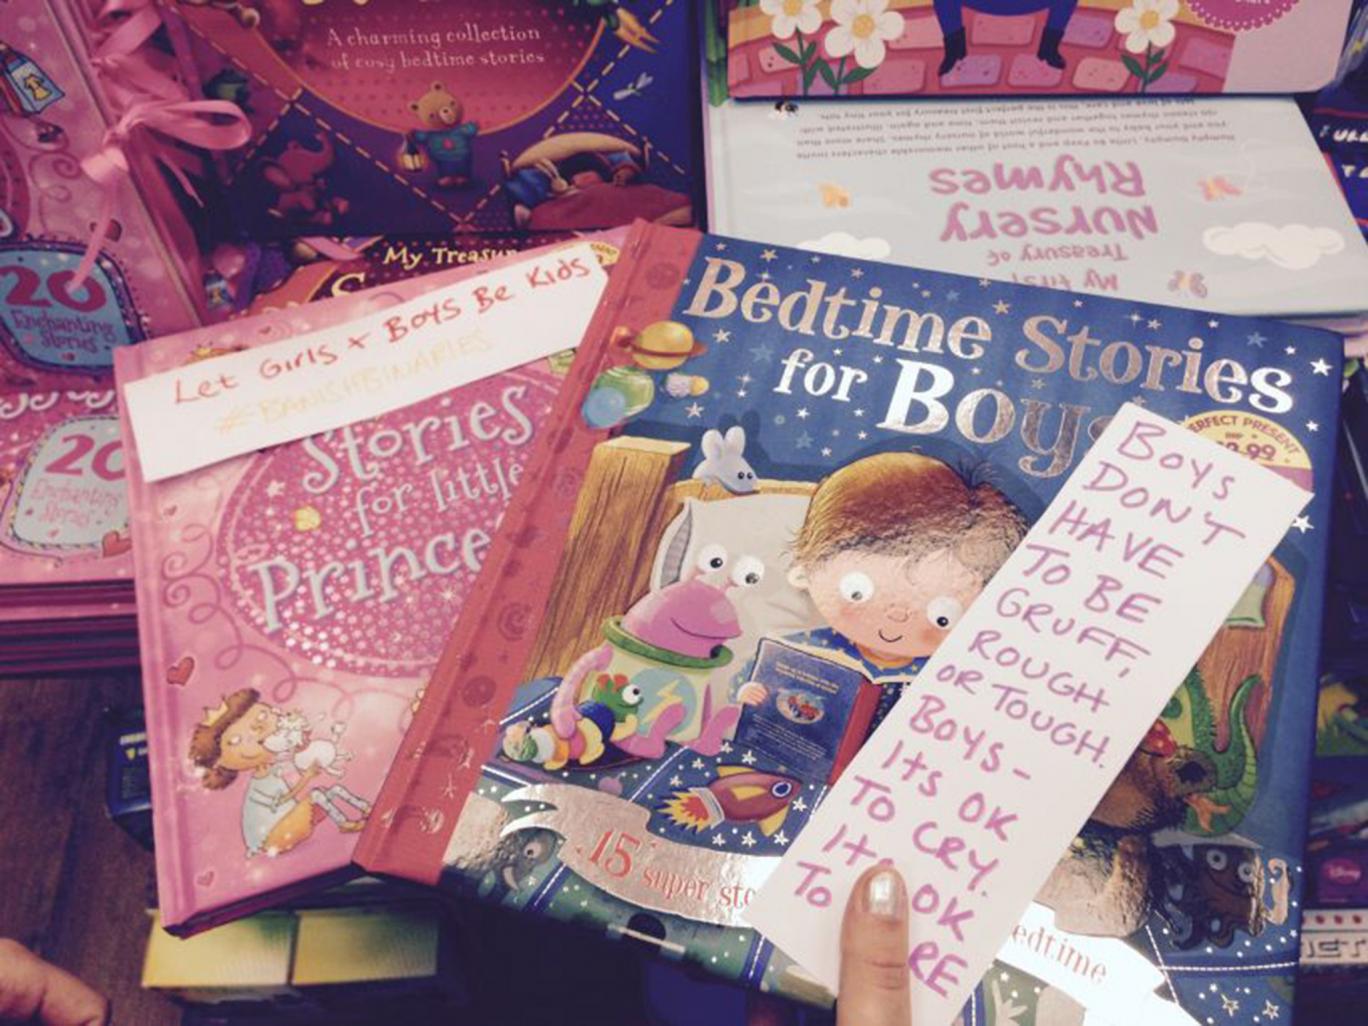 Feministkinje ostavljale oznake za dječje knjige kojima razbijaju rodne stereotipe